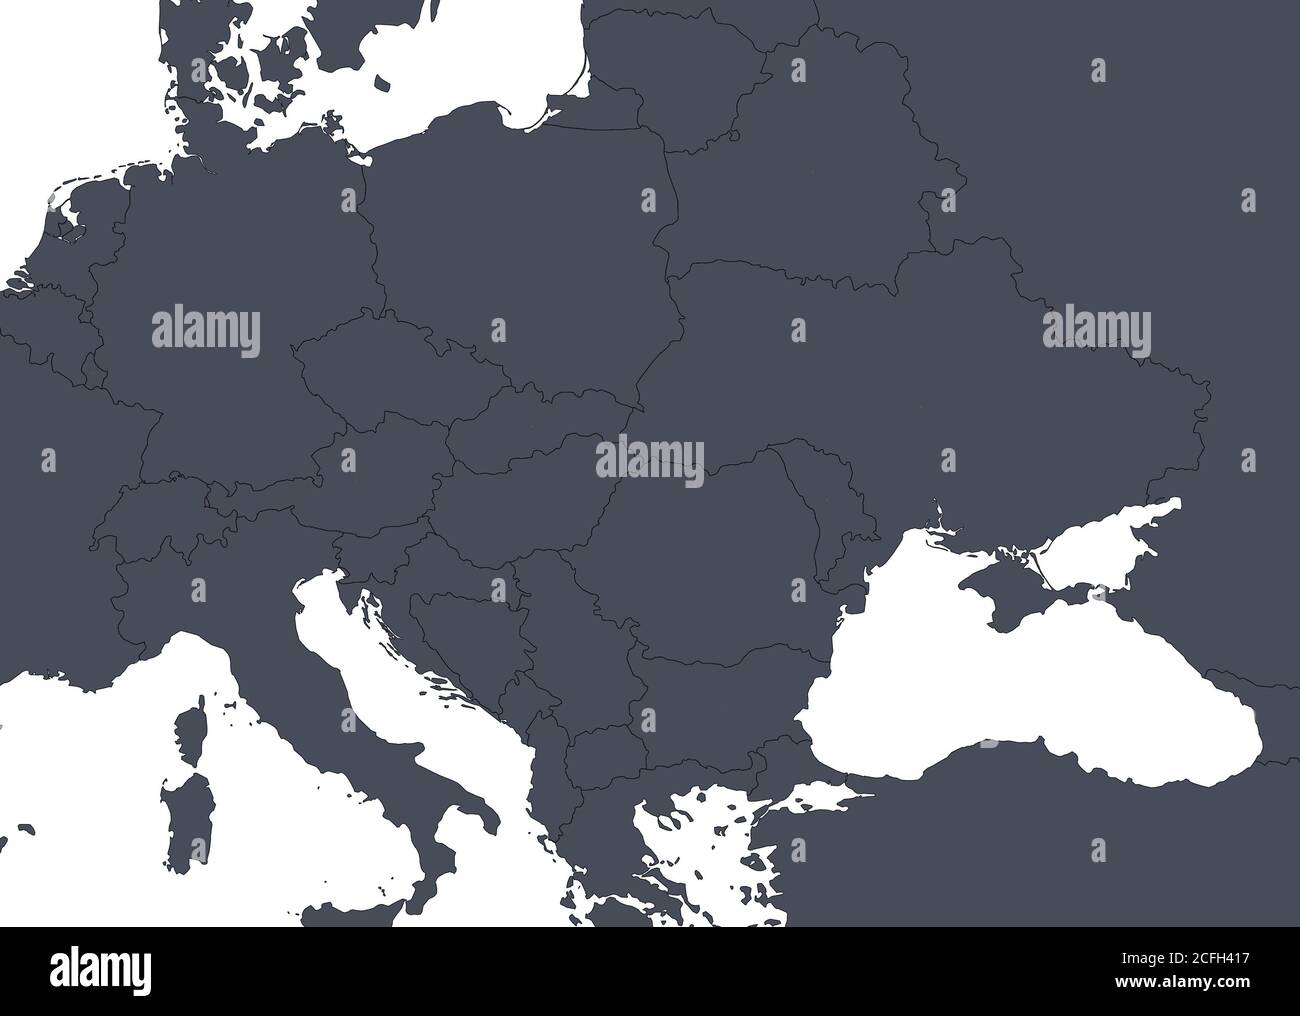 Mapa de Europa con fronteras de países. Detalle del mapa político mundial, región de Europa central y oriental con silueta. Tierra aislada sobre blanco Foto de stock